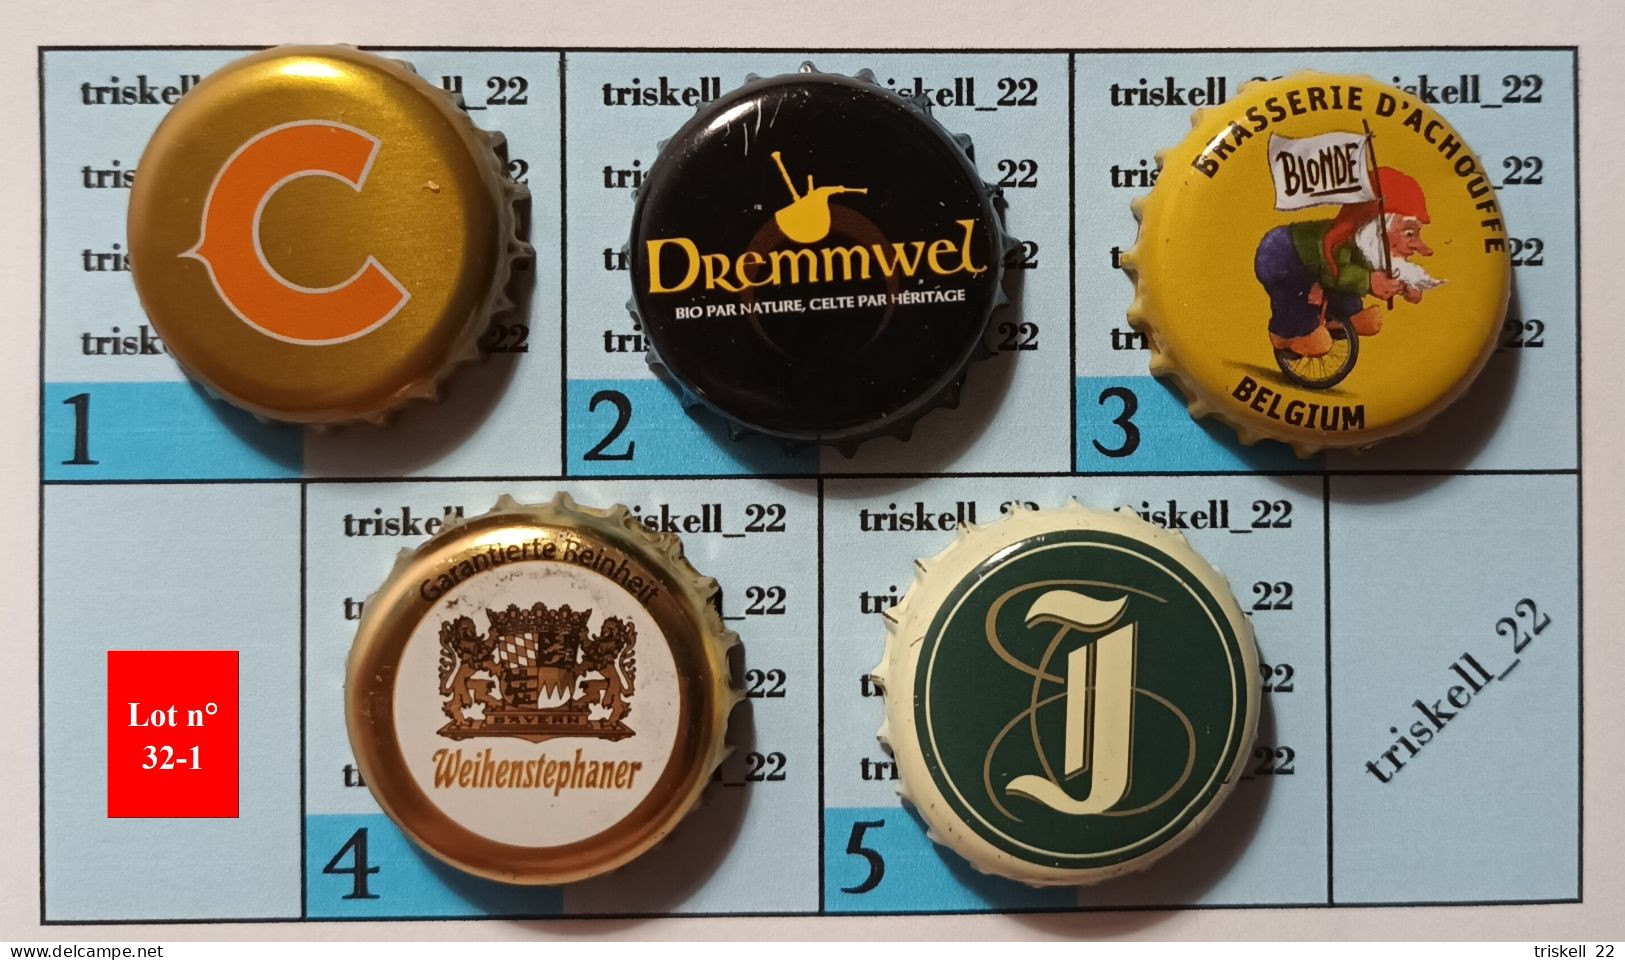 5 Capsules De Bière   Lot N° 32-1 - Bier